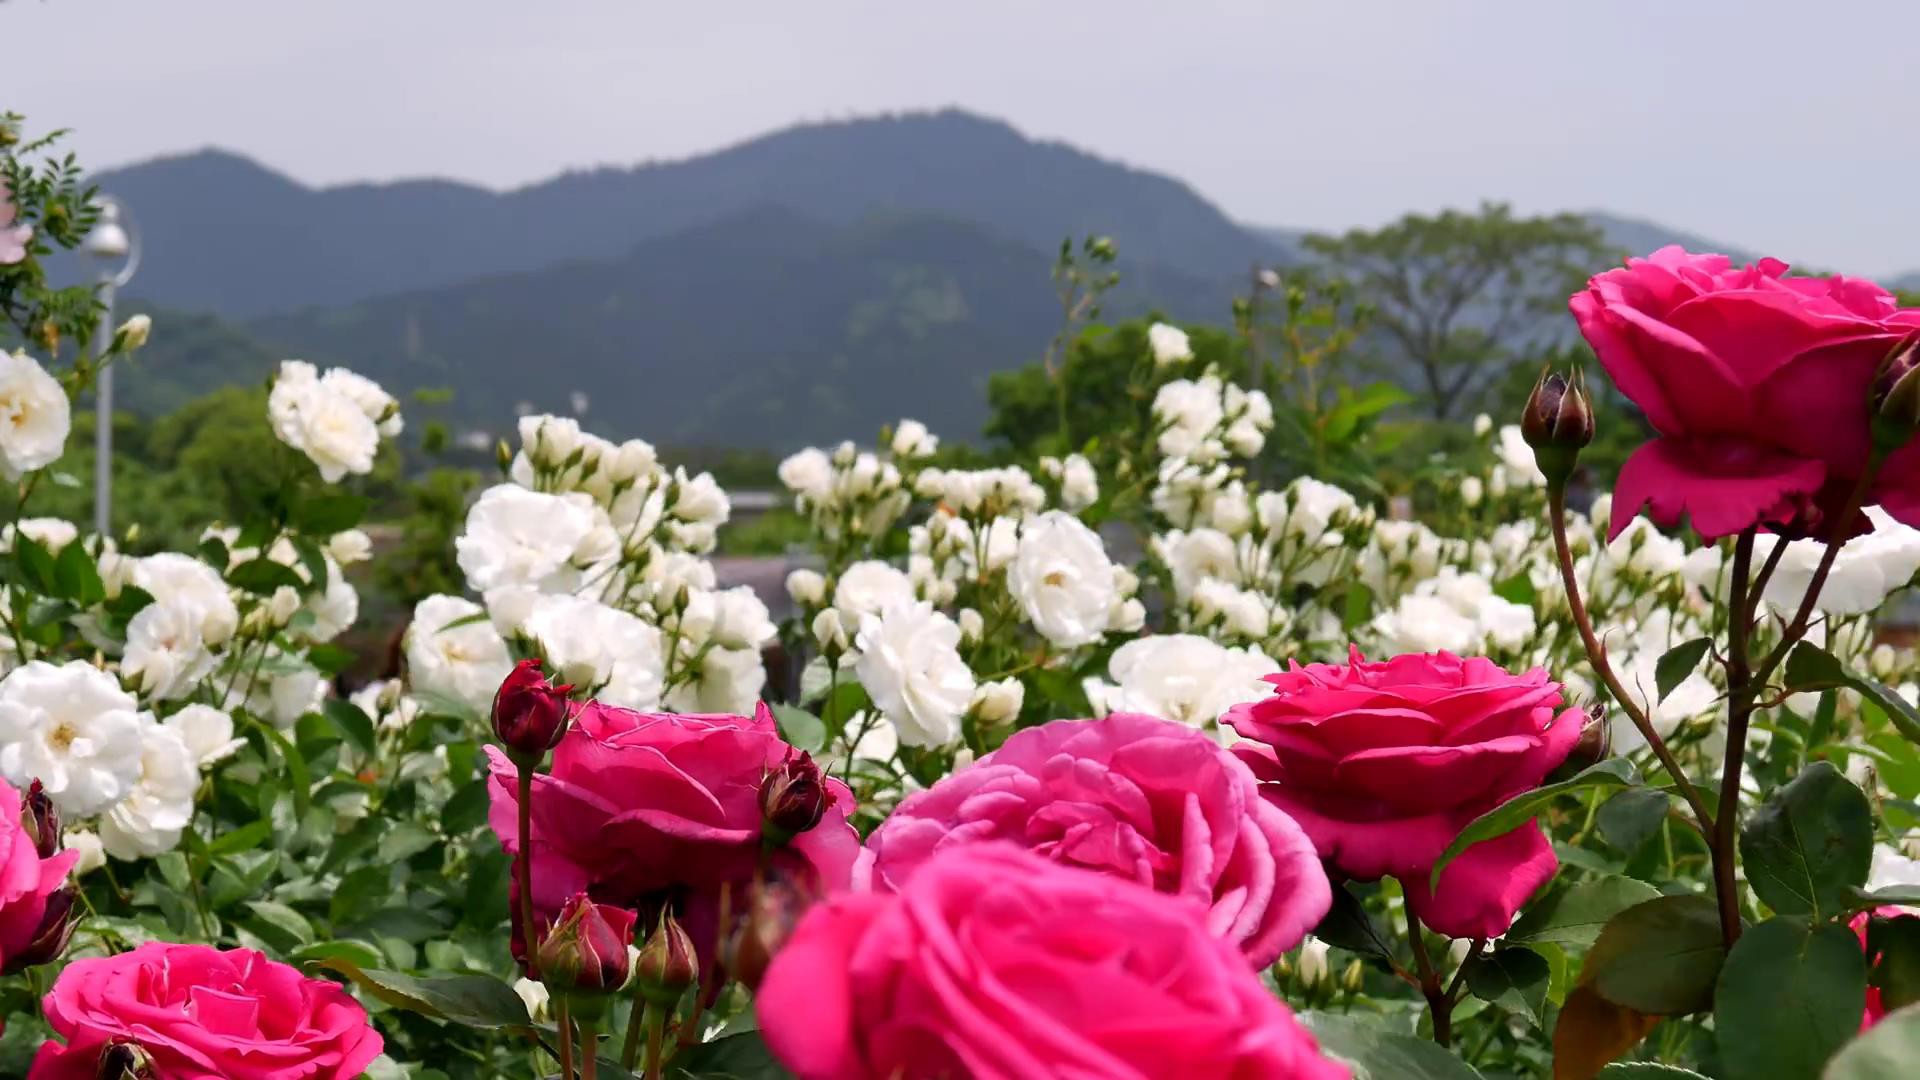 Đến thăm khu vườn trên đảo ở Nhật Bản với 2.600 cây hoa hồng rung rinh trước gió đẹp mê mẩn lòng người - Ảnh 7.